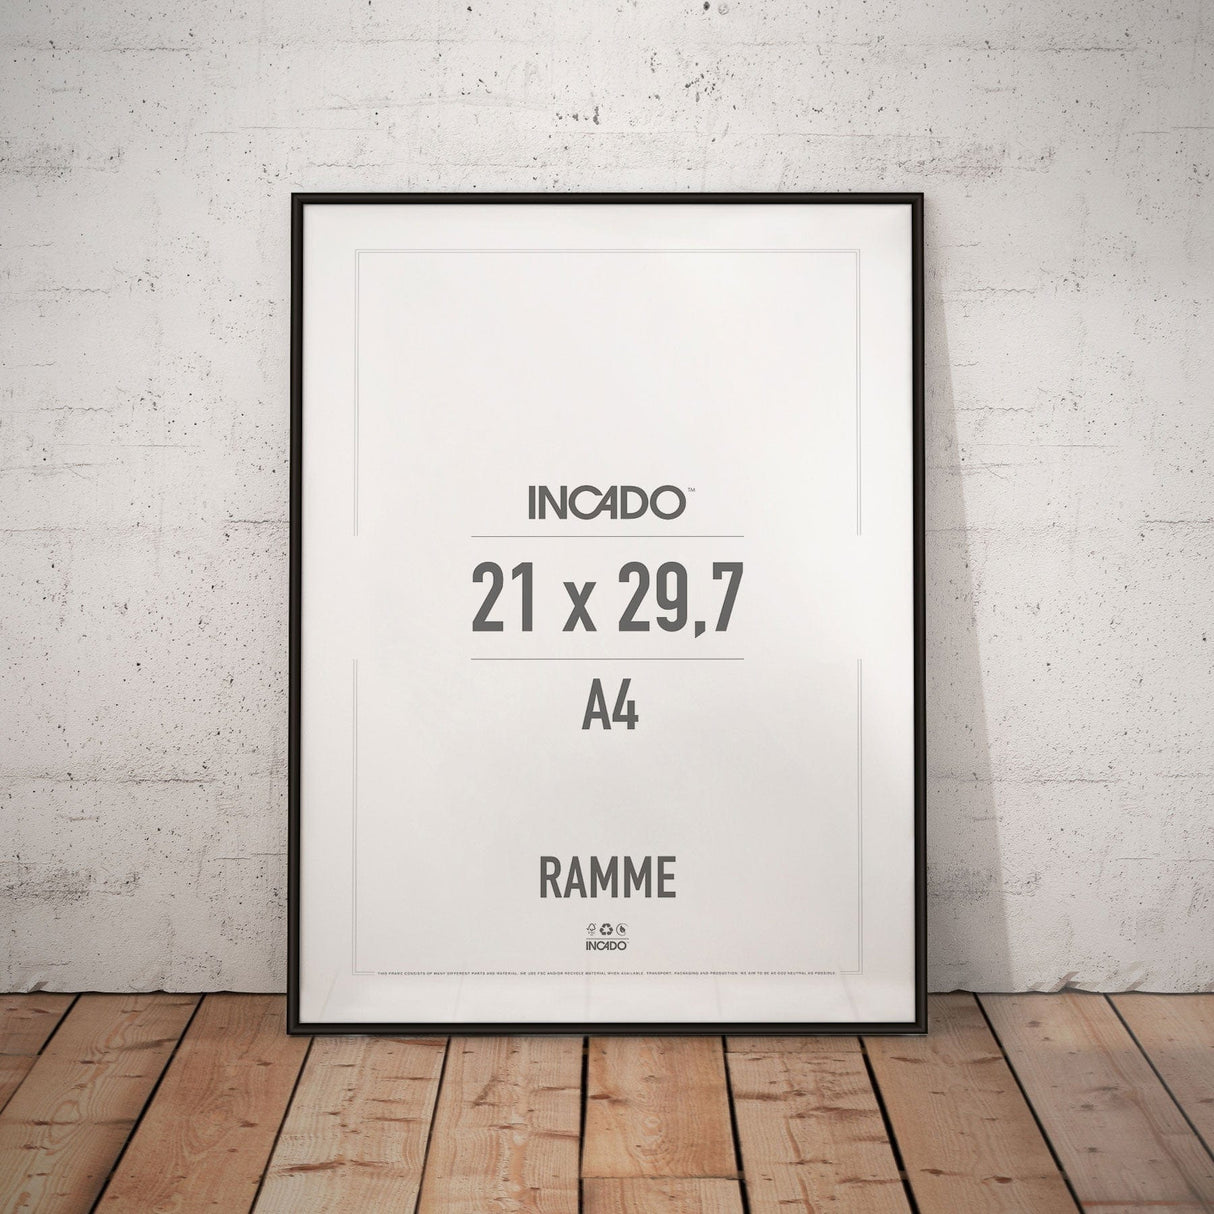 Sort aluminiumsramme - Incado NordicLine - 21 x 29,7 cm / A4